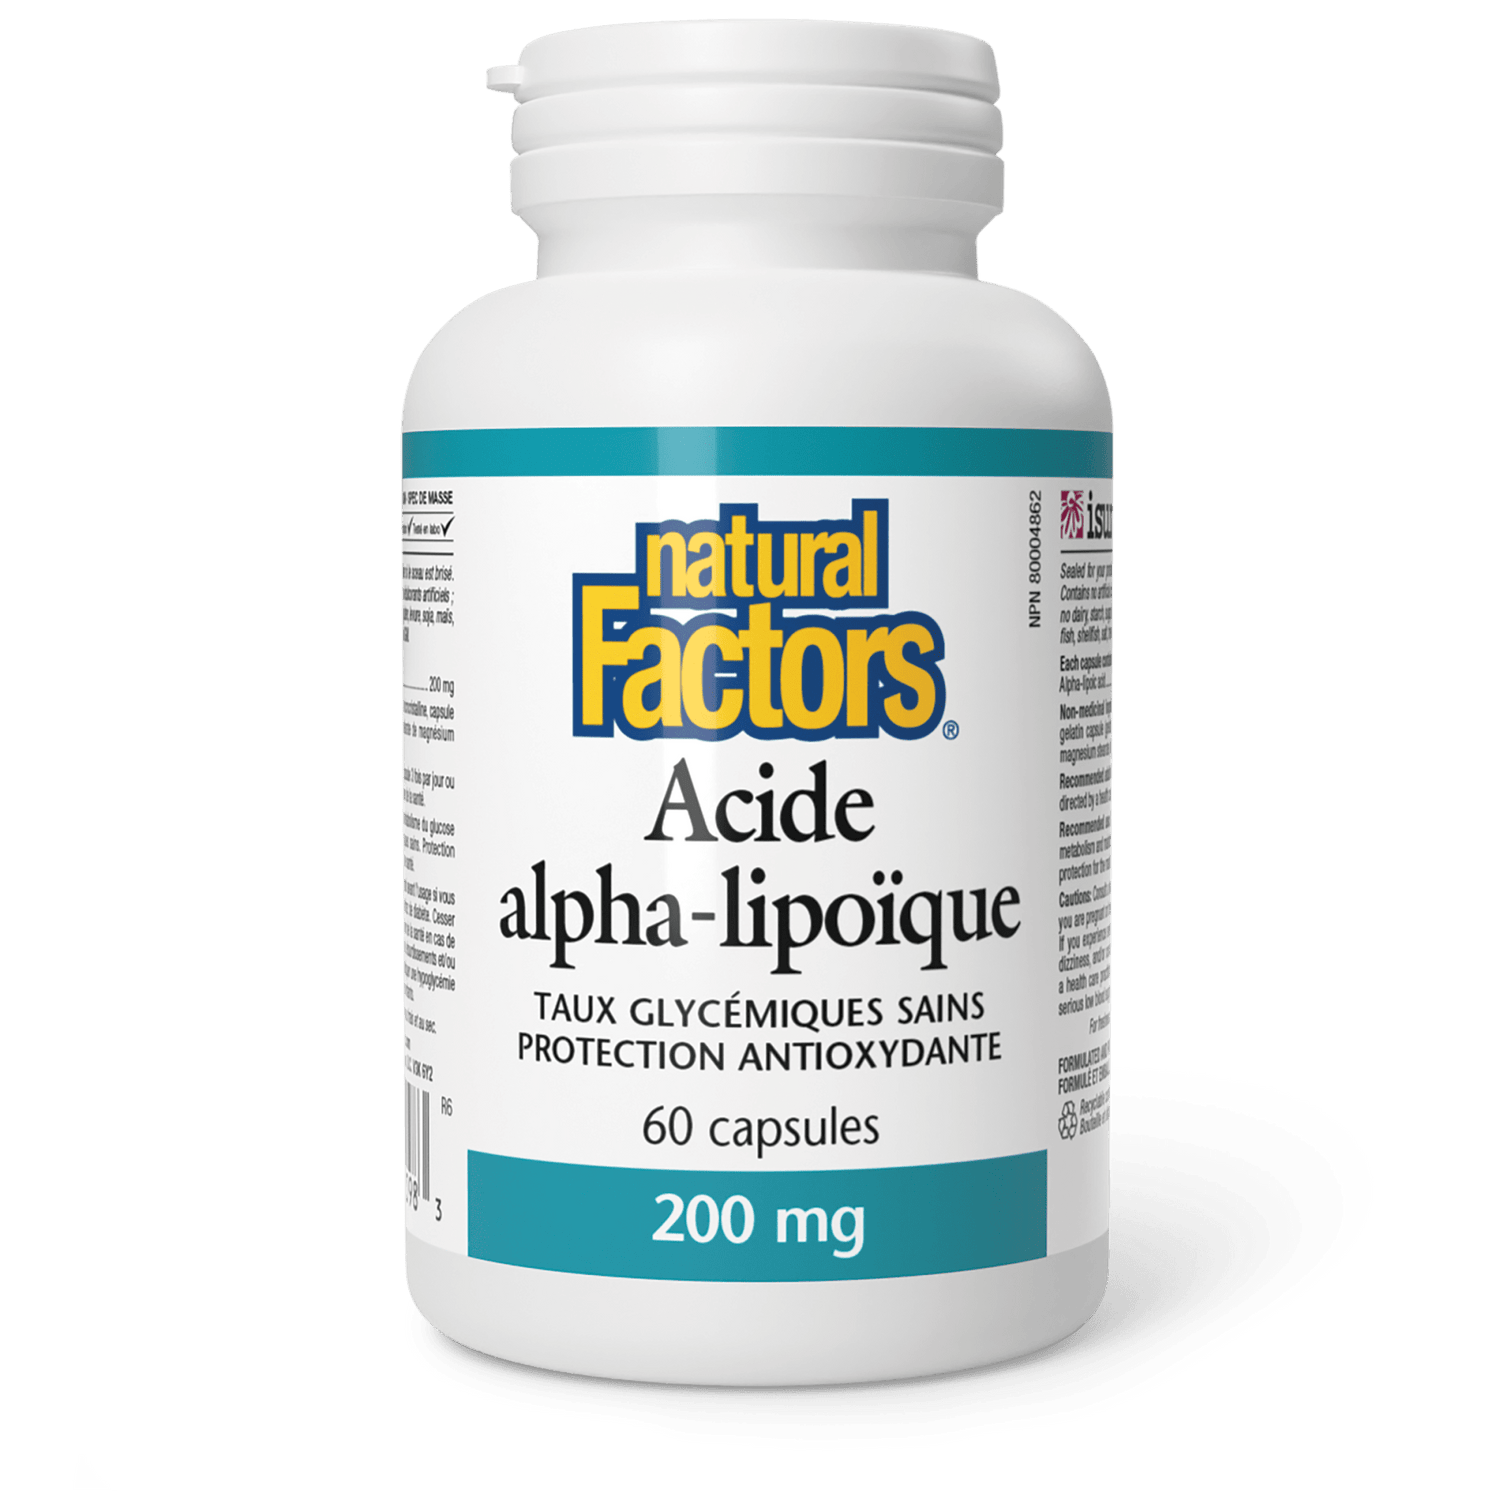 Acide alpha-lipoïque 200 mg, Natural Factors|v|image|2098